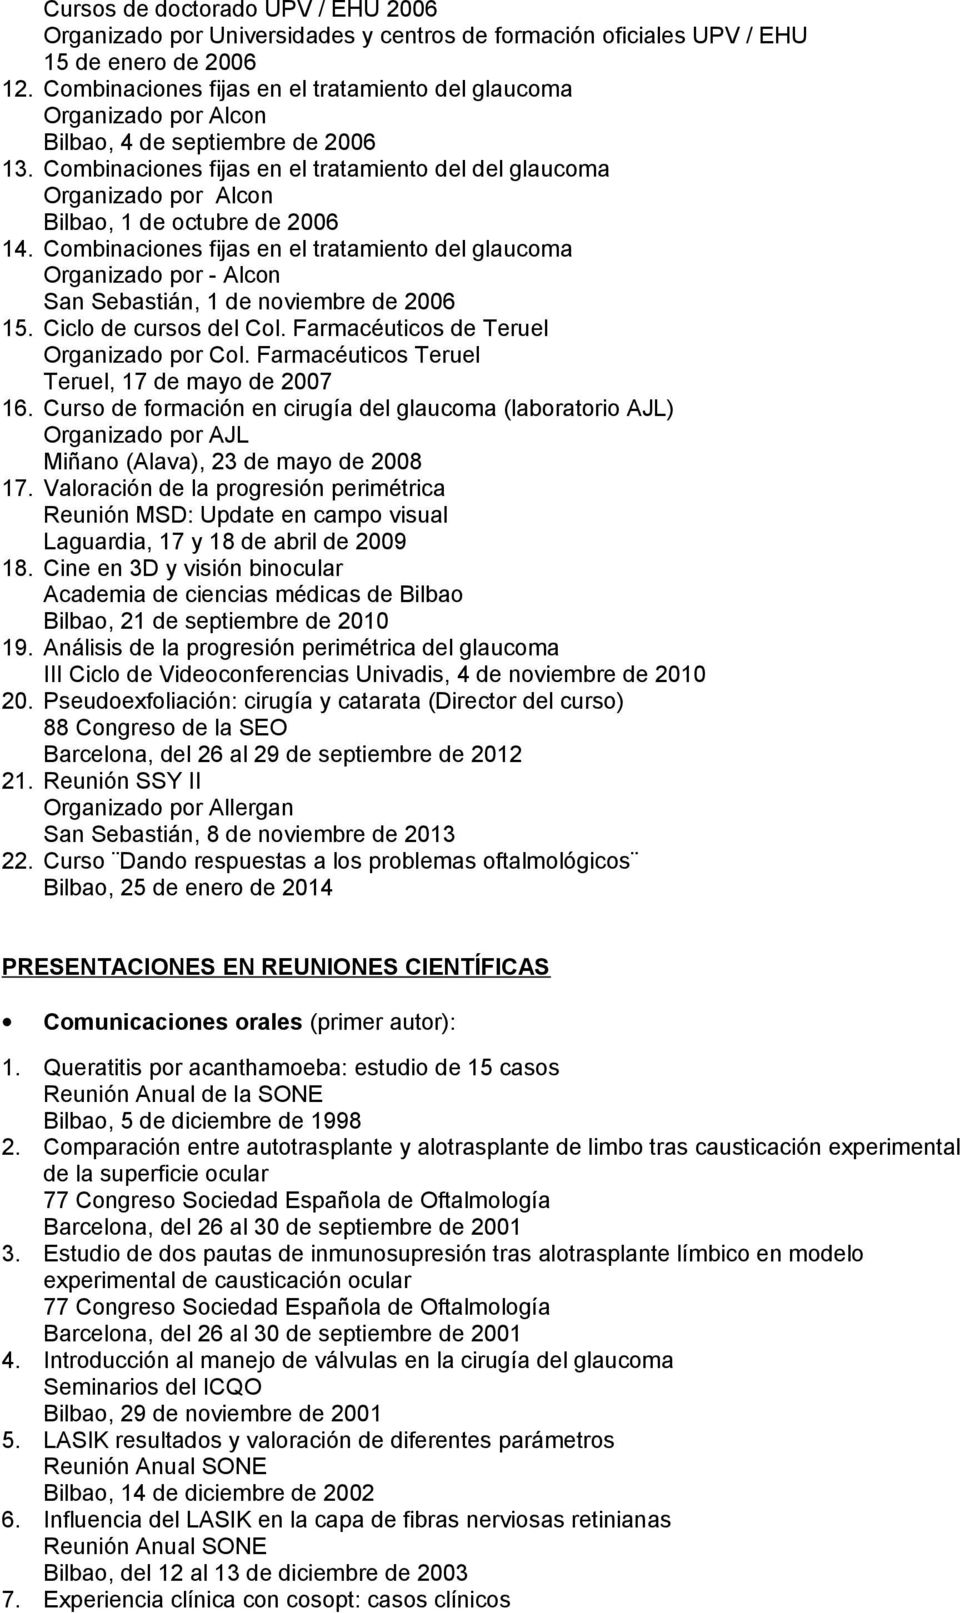 Combinaciones fijas en el tratamiento del del glaucoma Organizado por Alcon Bilbao, 1 de octubre de 2006 14.